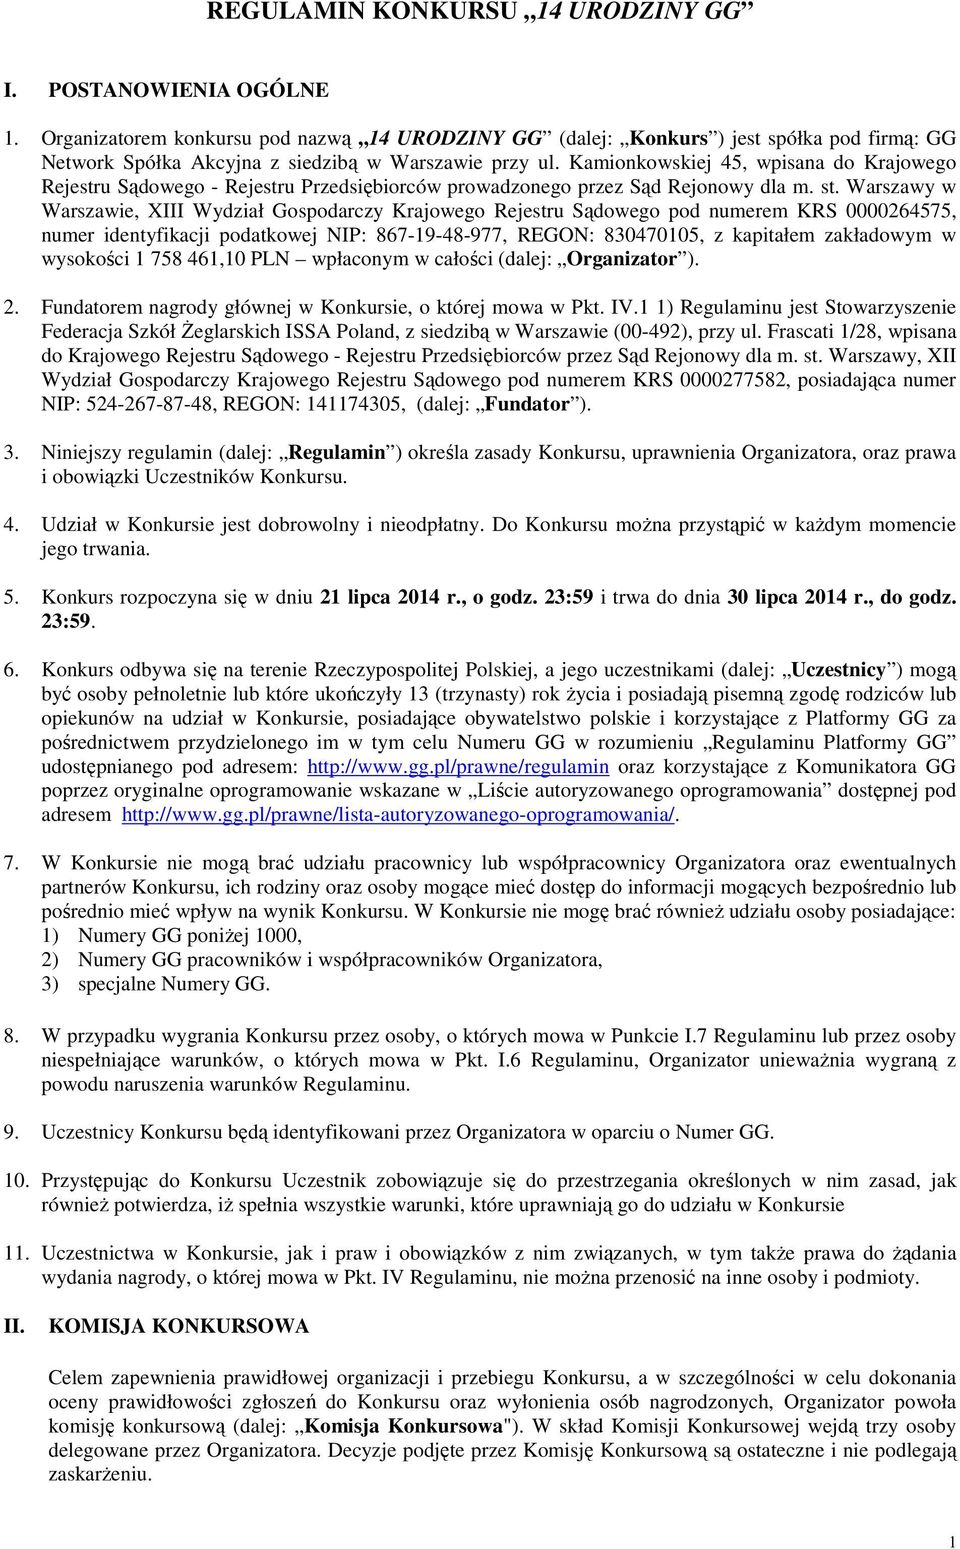 Kamionkowskiej 45, wpisana do Krajowego Rejestru Sądowego - Rejestru Przedsiębiorców prowadzonego przez Sąd Rejonowy dla m. st.